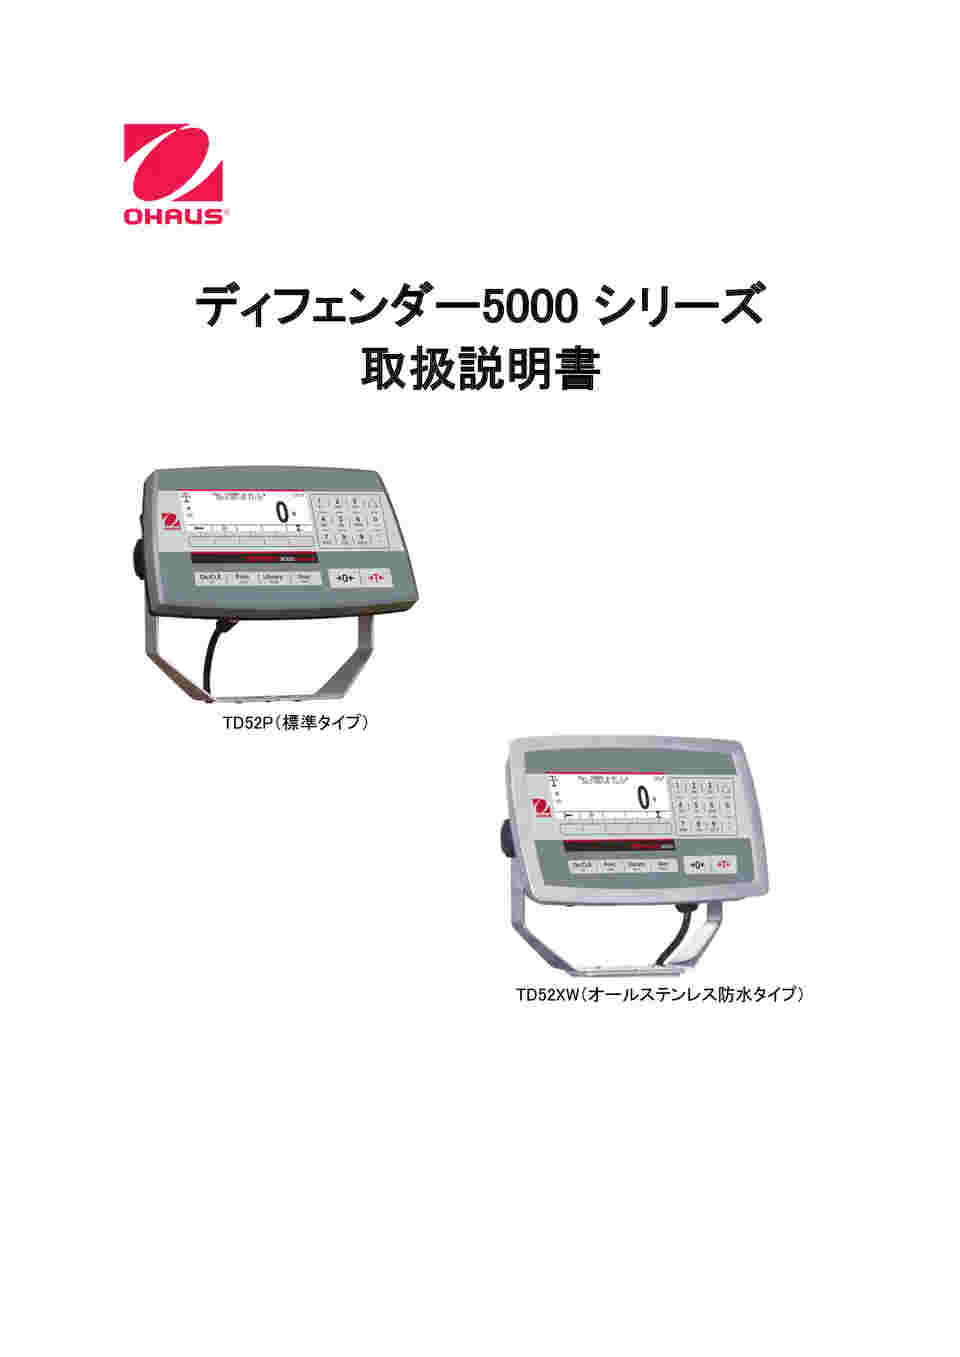 63-5729-49 デジタル台はかり D5000シリーズ 6/15kg 0.5/1g